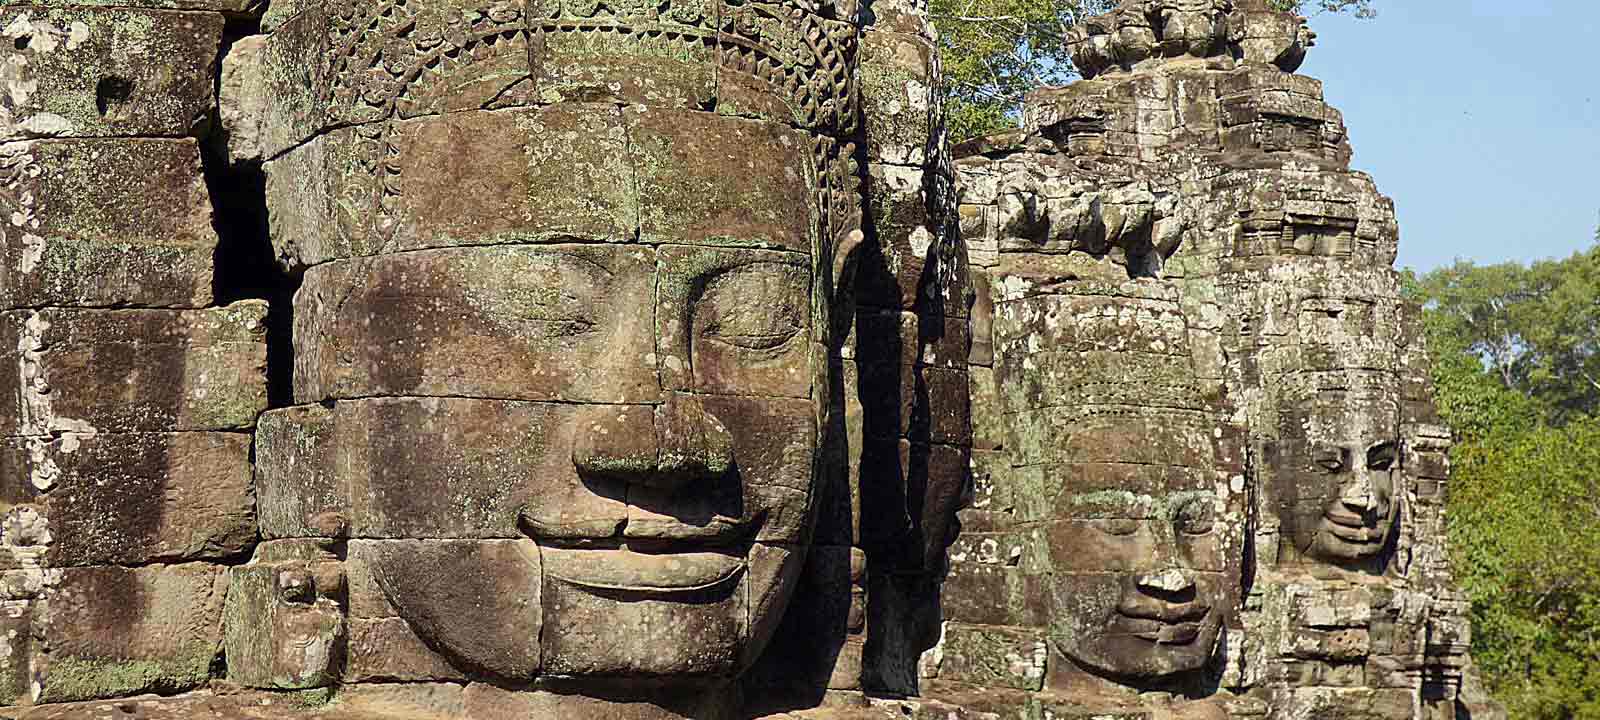 L'histoire impressionnante du Cambodge